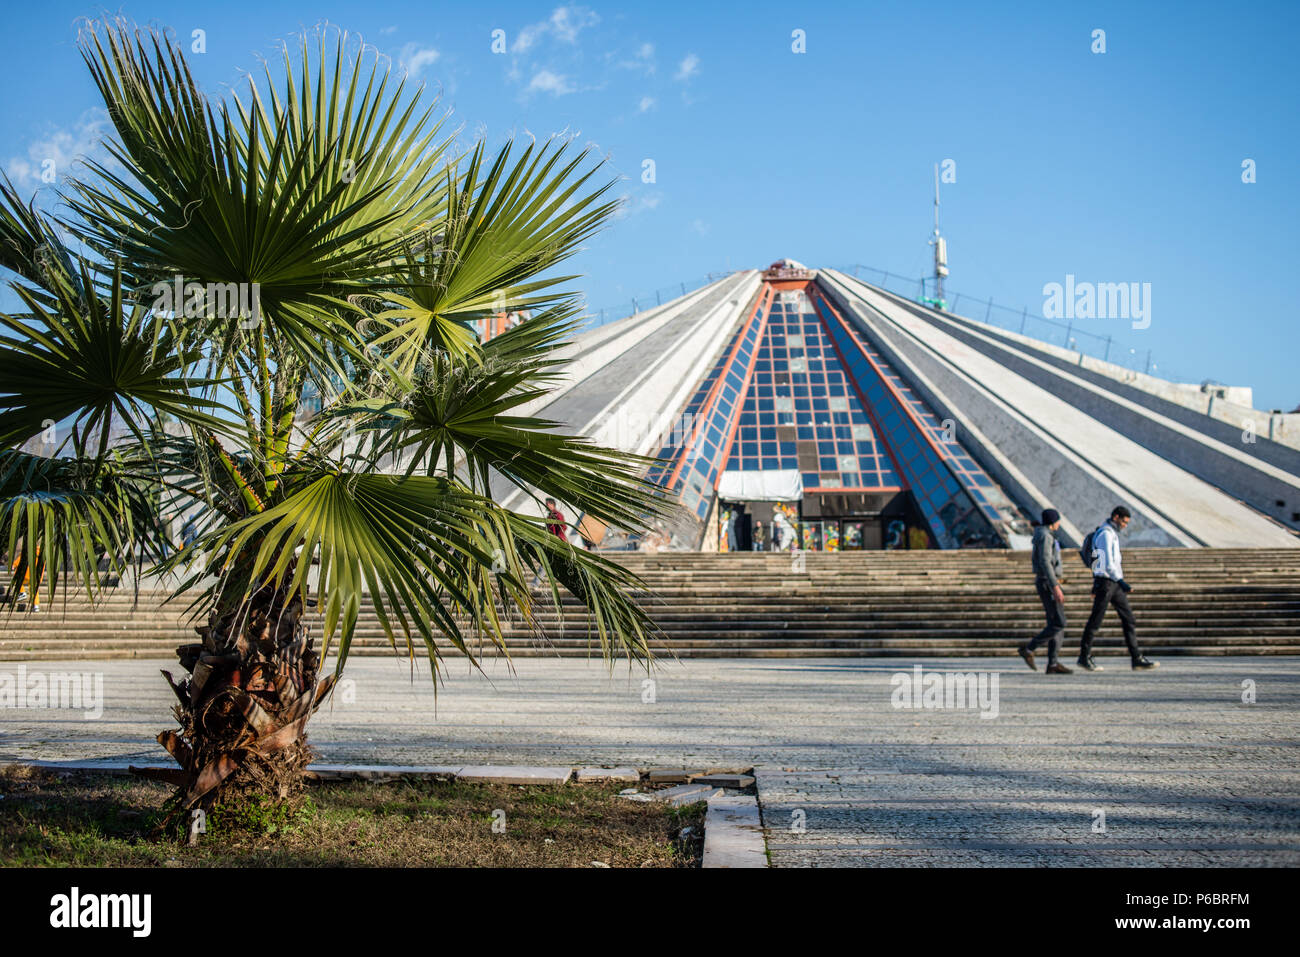 Pyramid of Tirana, Tirana, Albania Stock Photo